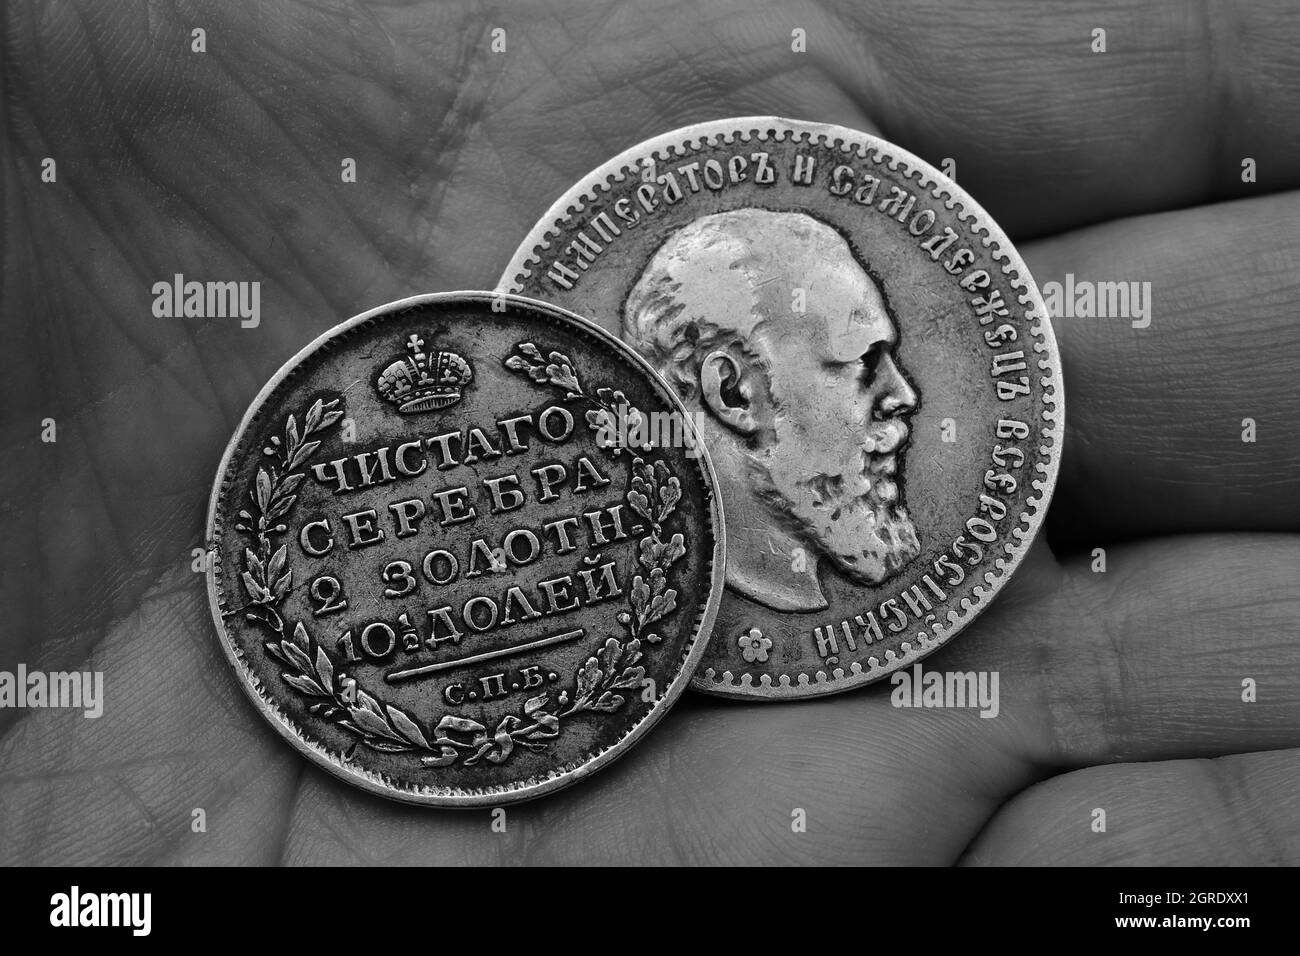 Zwei alte russische Silbermünzen des 18. Jahrhunderts in der Palme, schwarz-weiße Fotografie Stockfoto